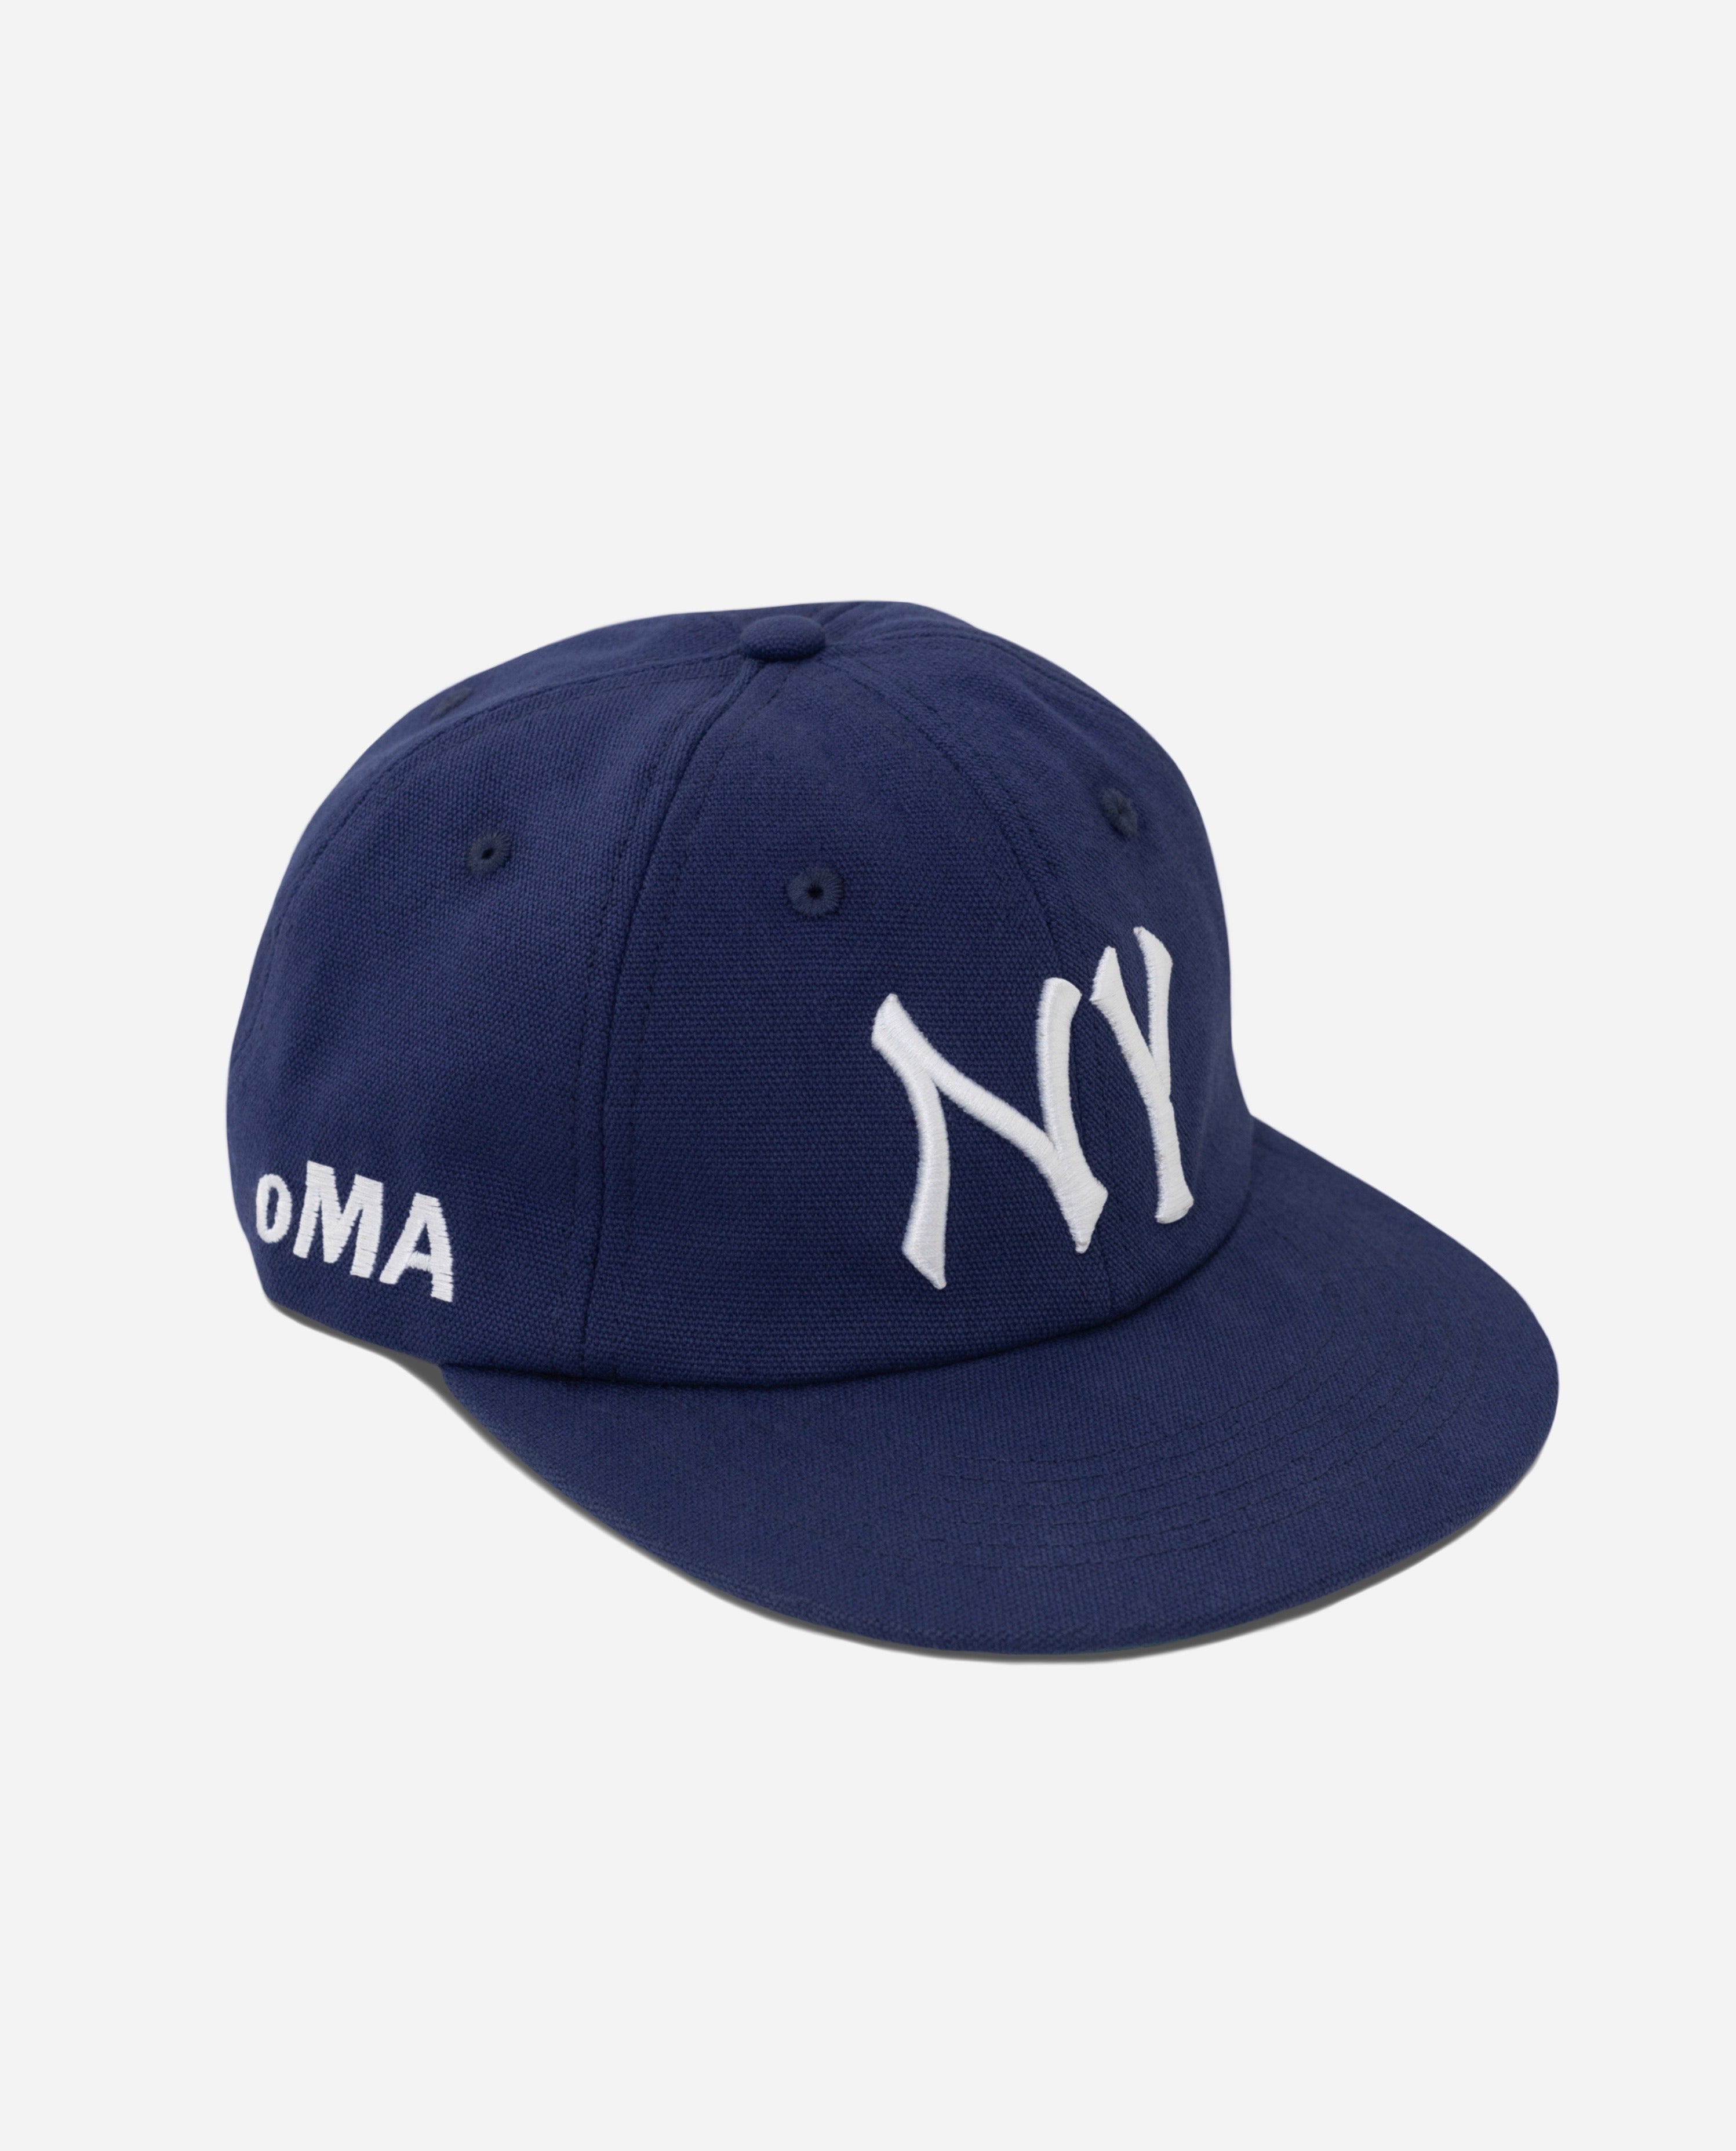 oMA NEW YORK HAT (NAVY BLUE)